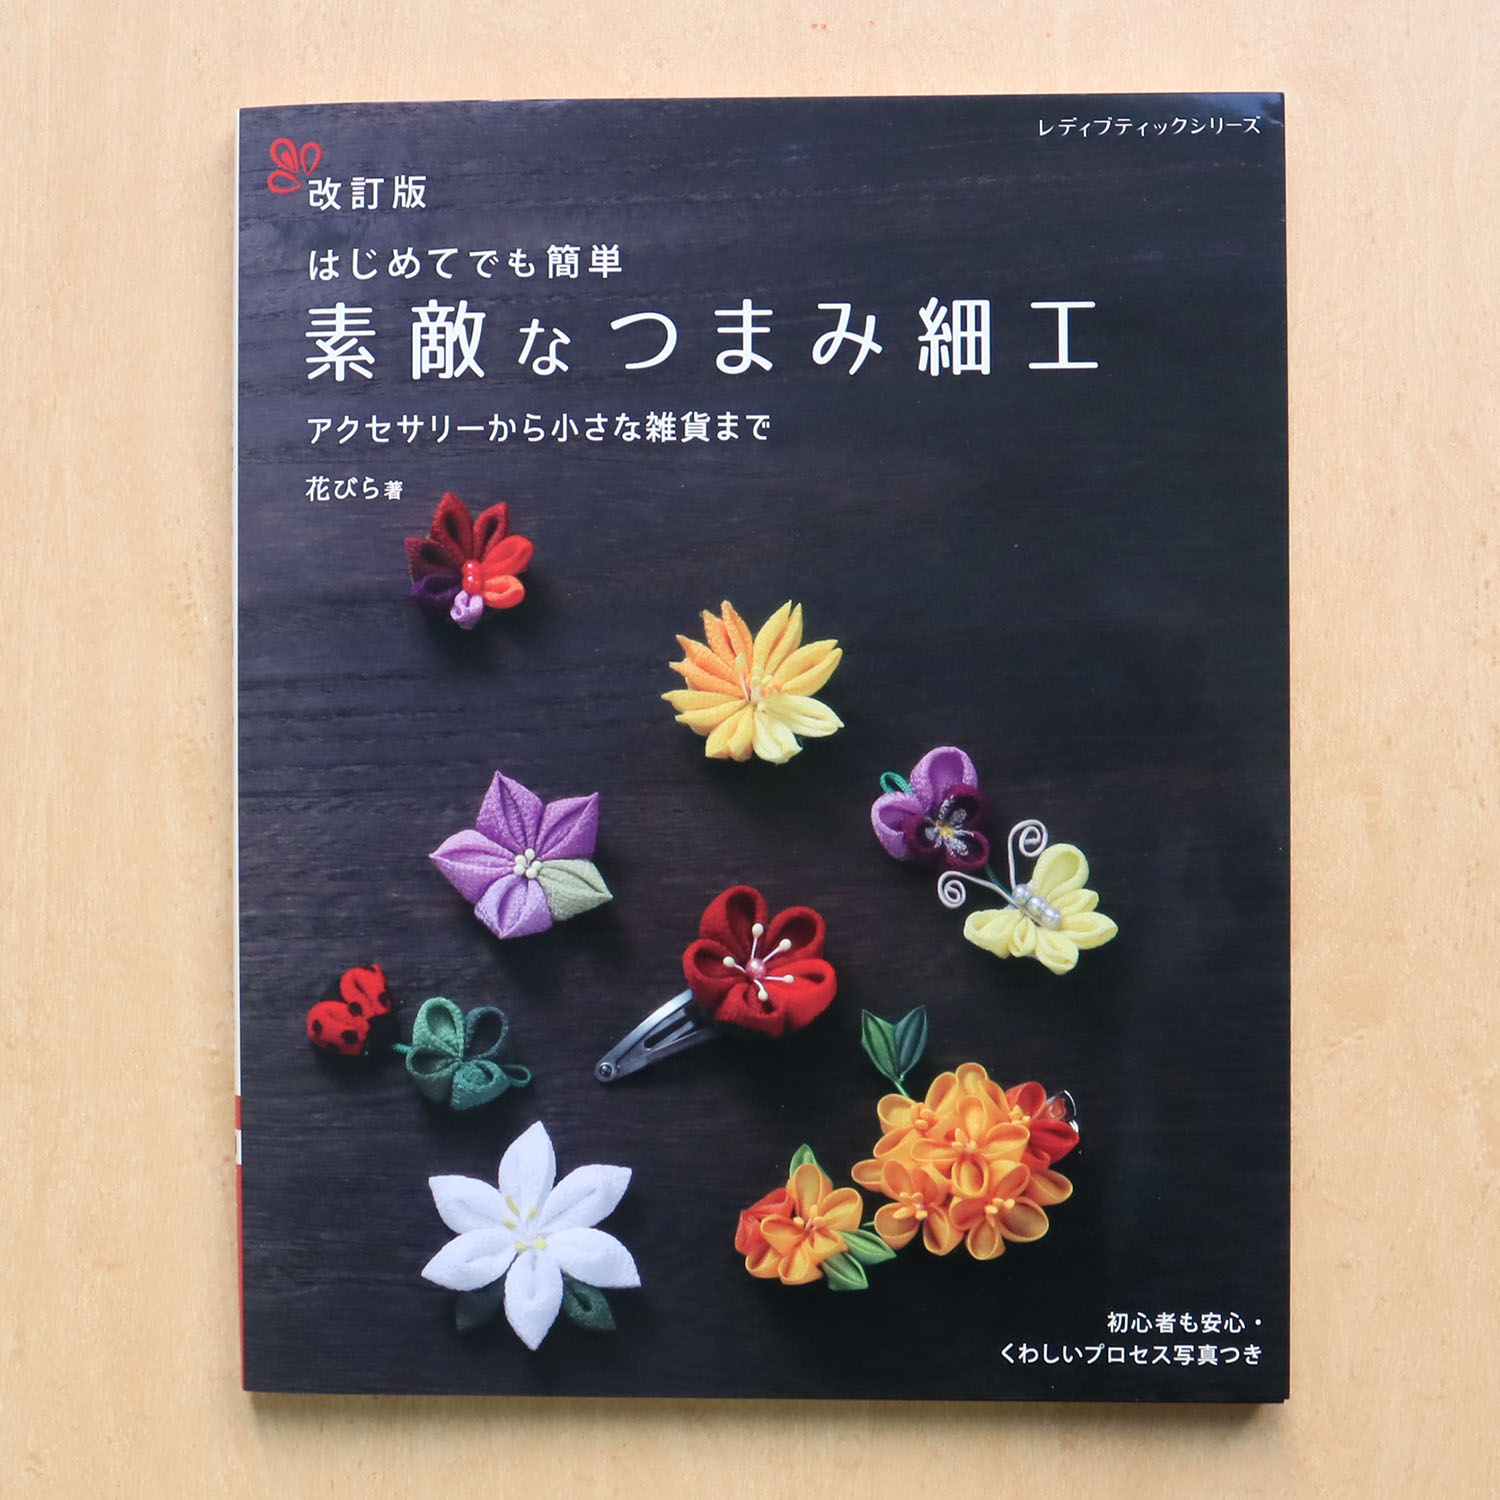 Tsumami Appliqué 09 applique Kanzashi Japanese Craft Book 